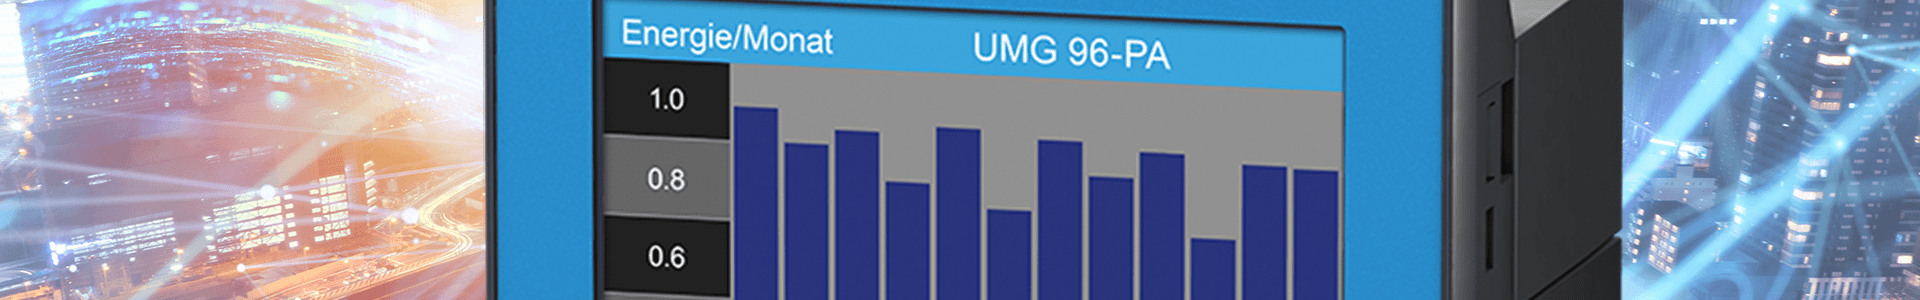 Strumenti di misura universali UMG